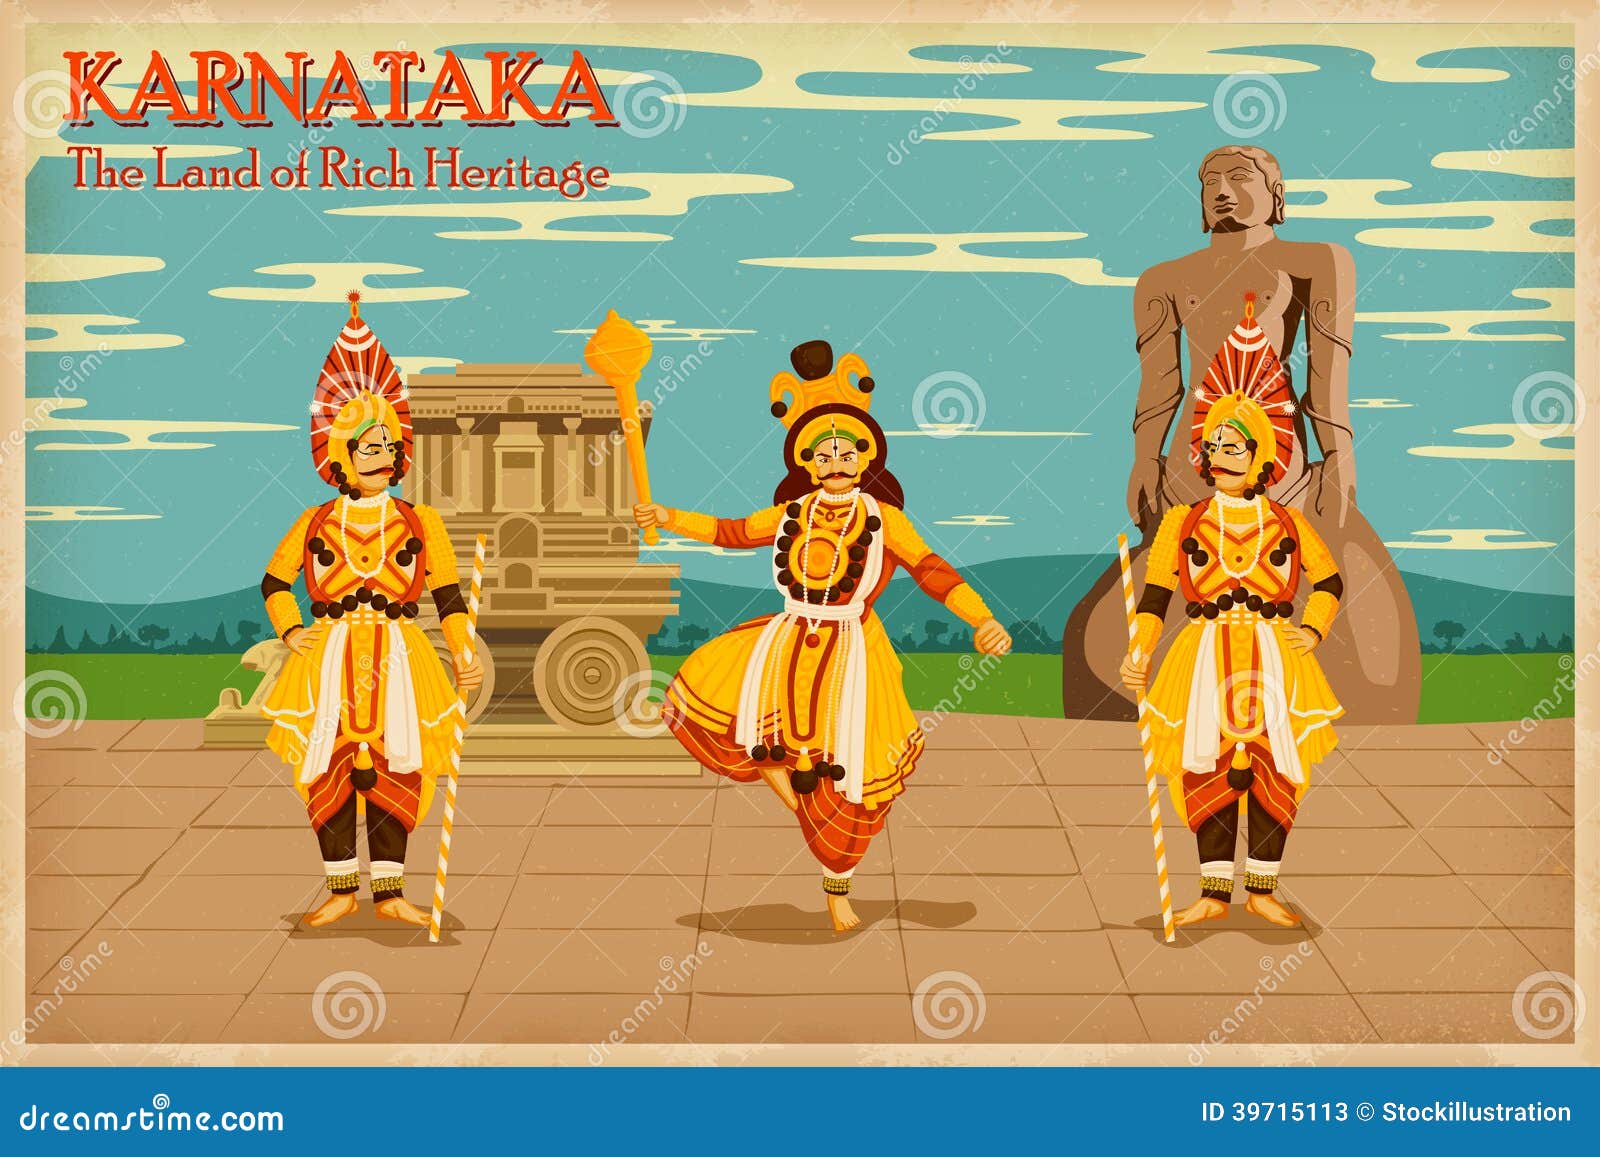 culture of karnataka